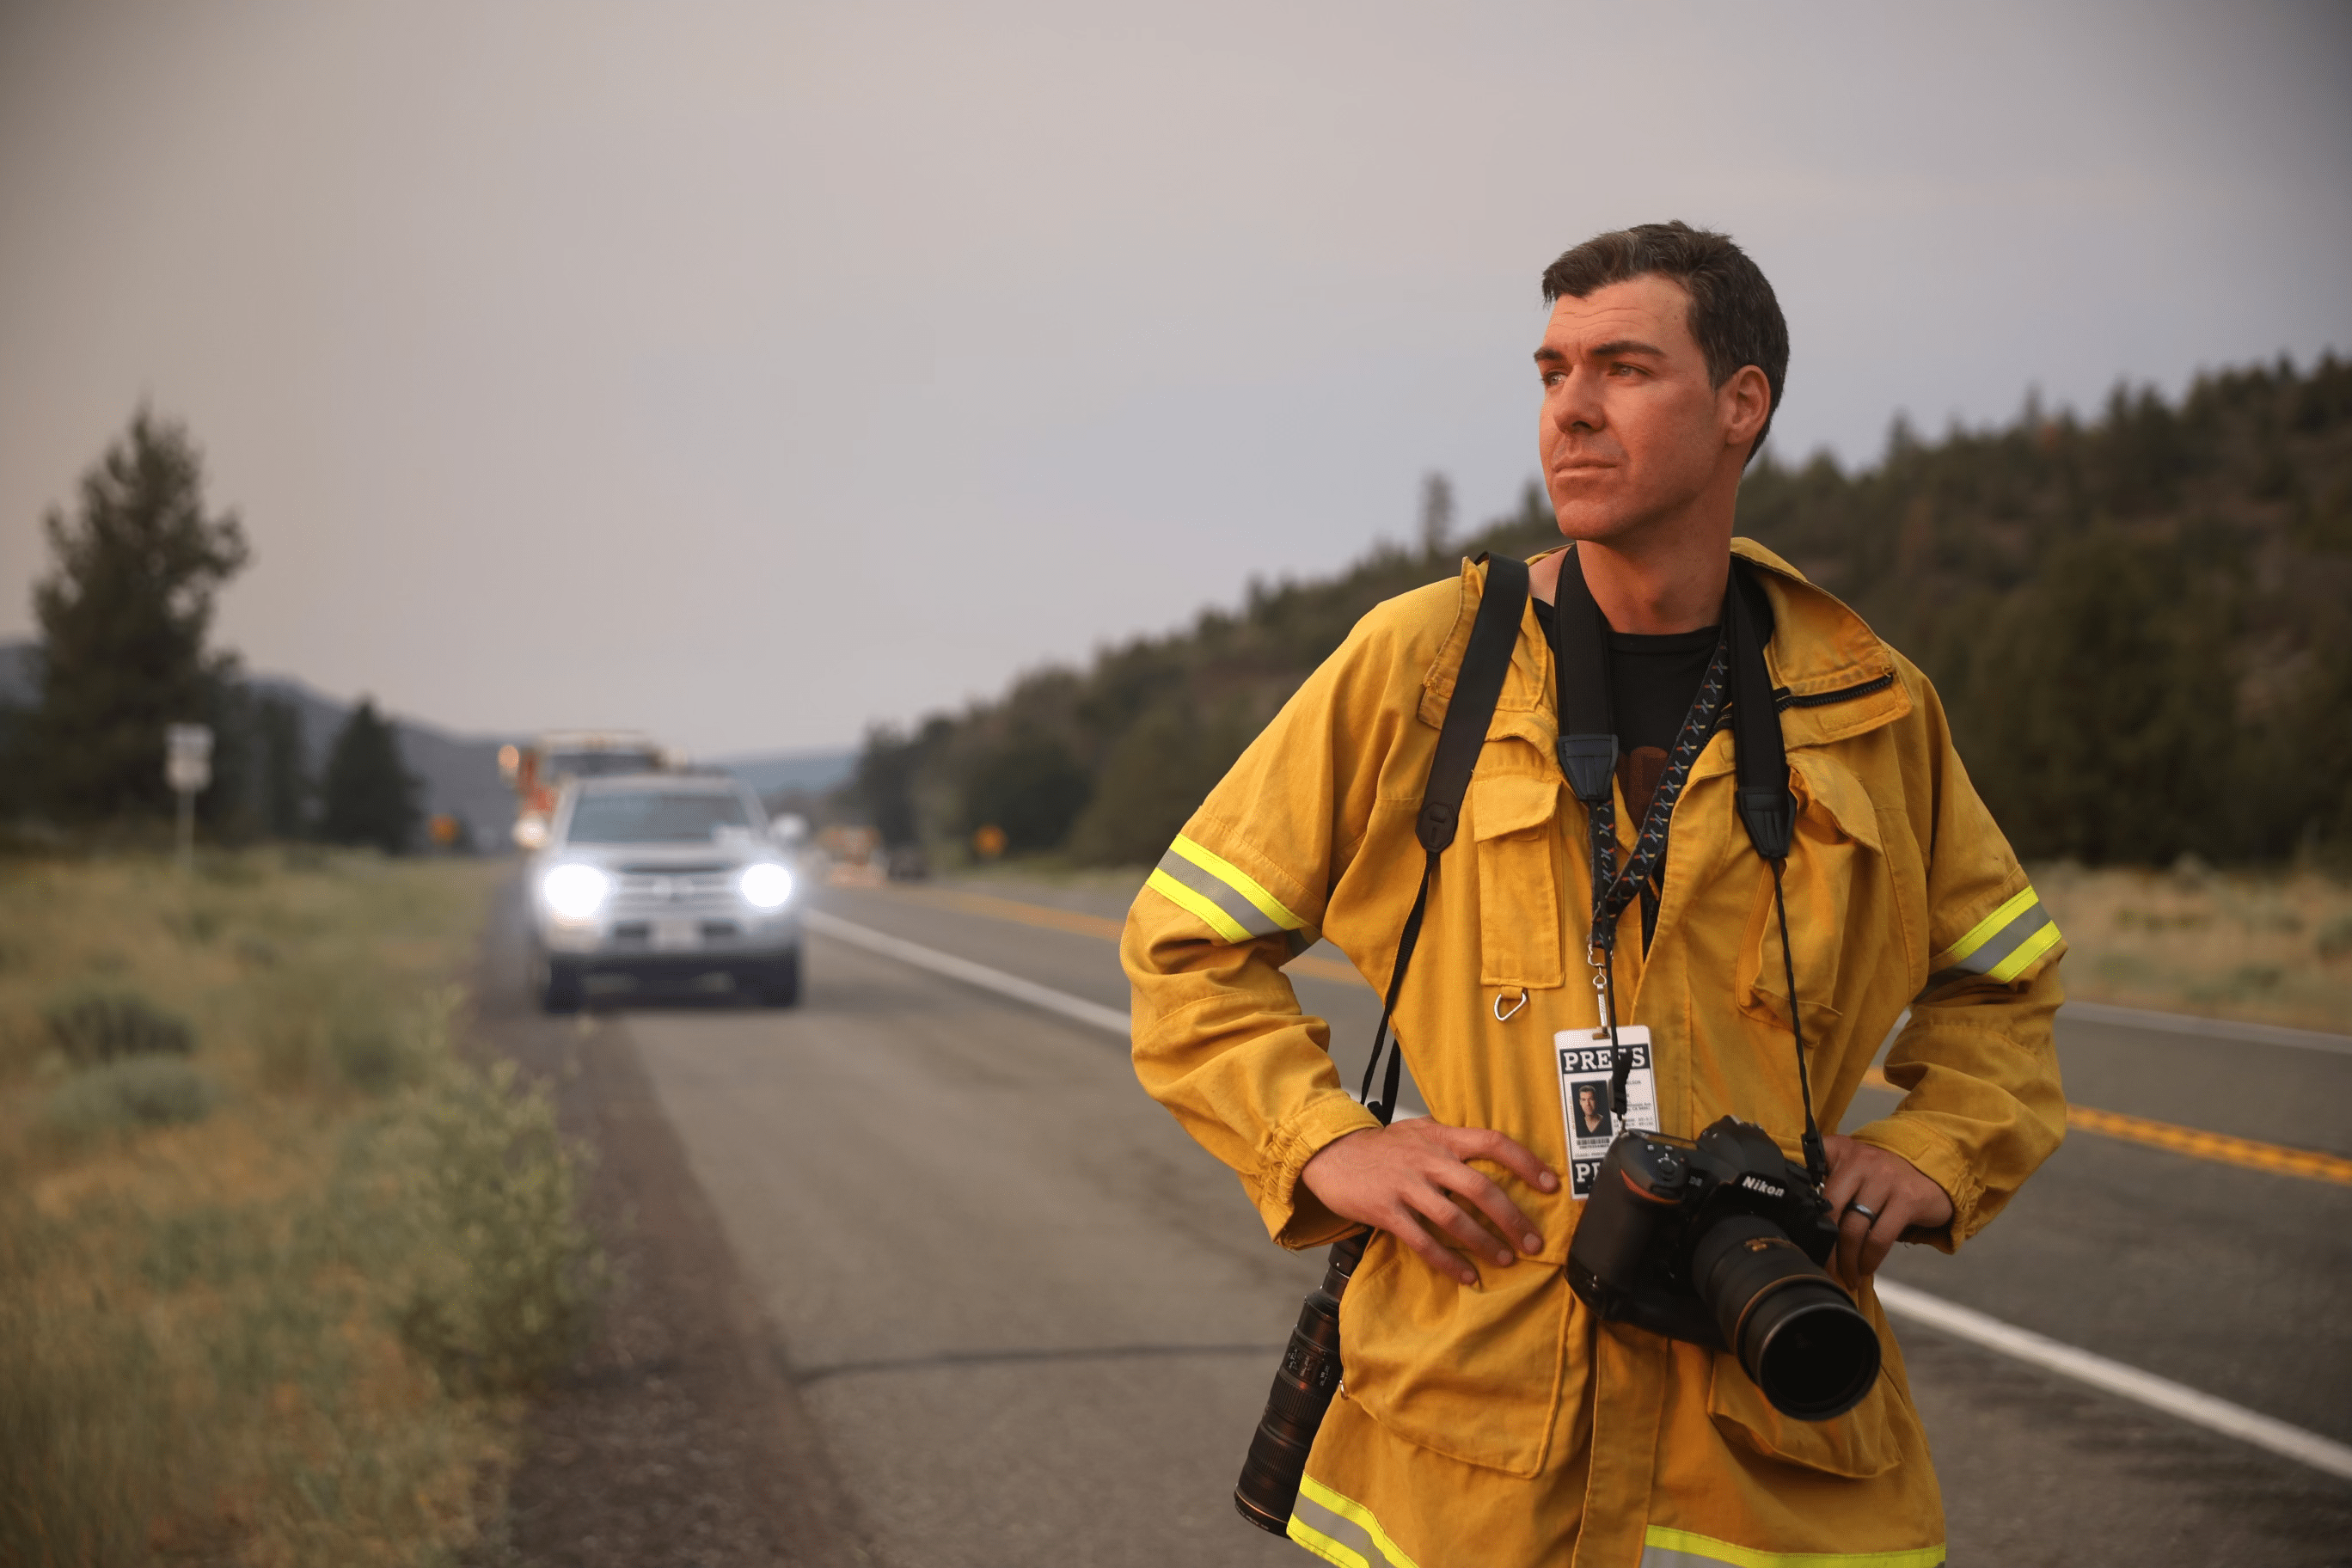 Fotograf Josh Edelson obserwuje krajobraz, stojąc na drodze z aparatem i plakietką prasową na szyi.